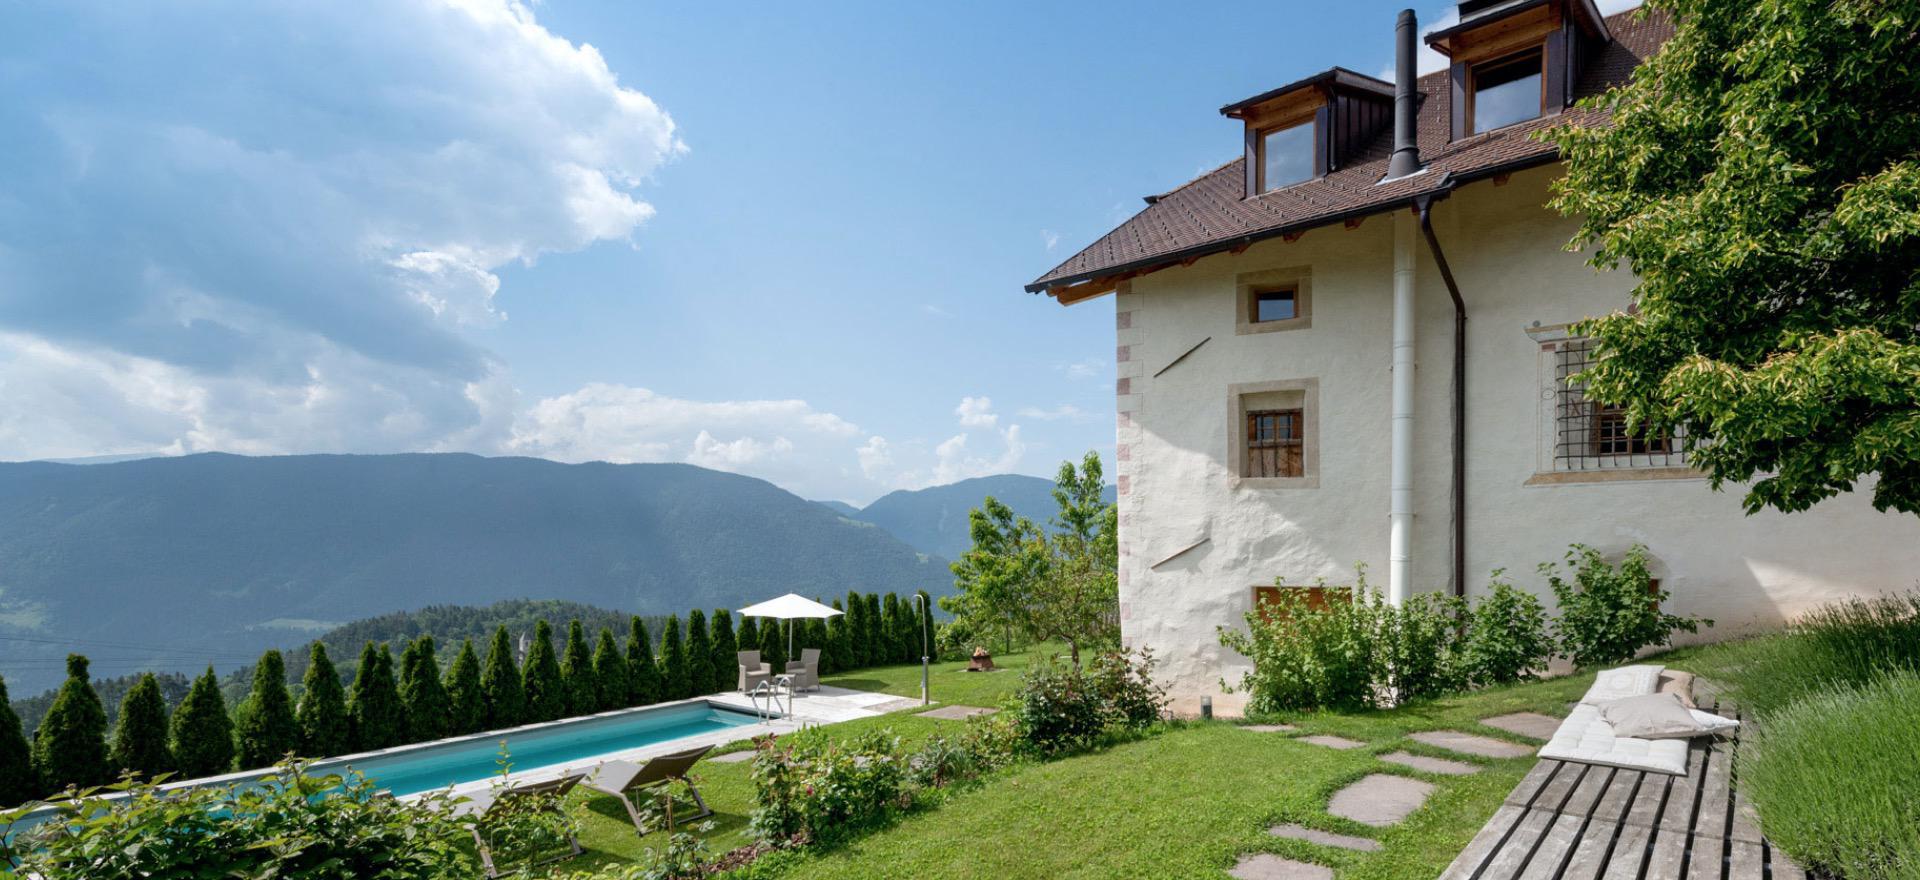 Agriturismo Dolomiti Agriturismo di lusso con camere B&B e Sudtiroler ospitalità